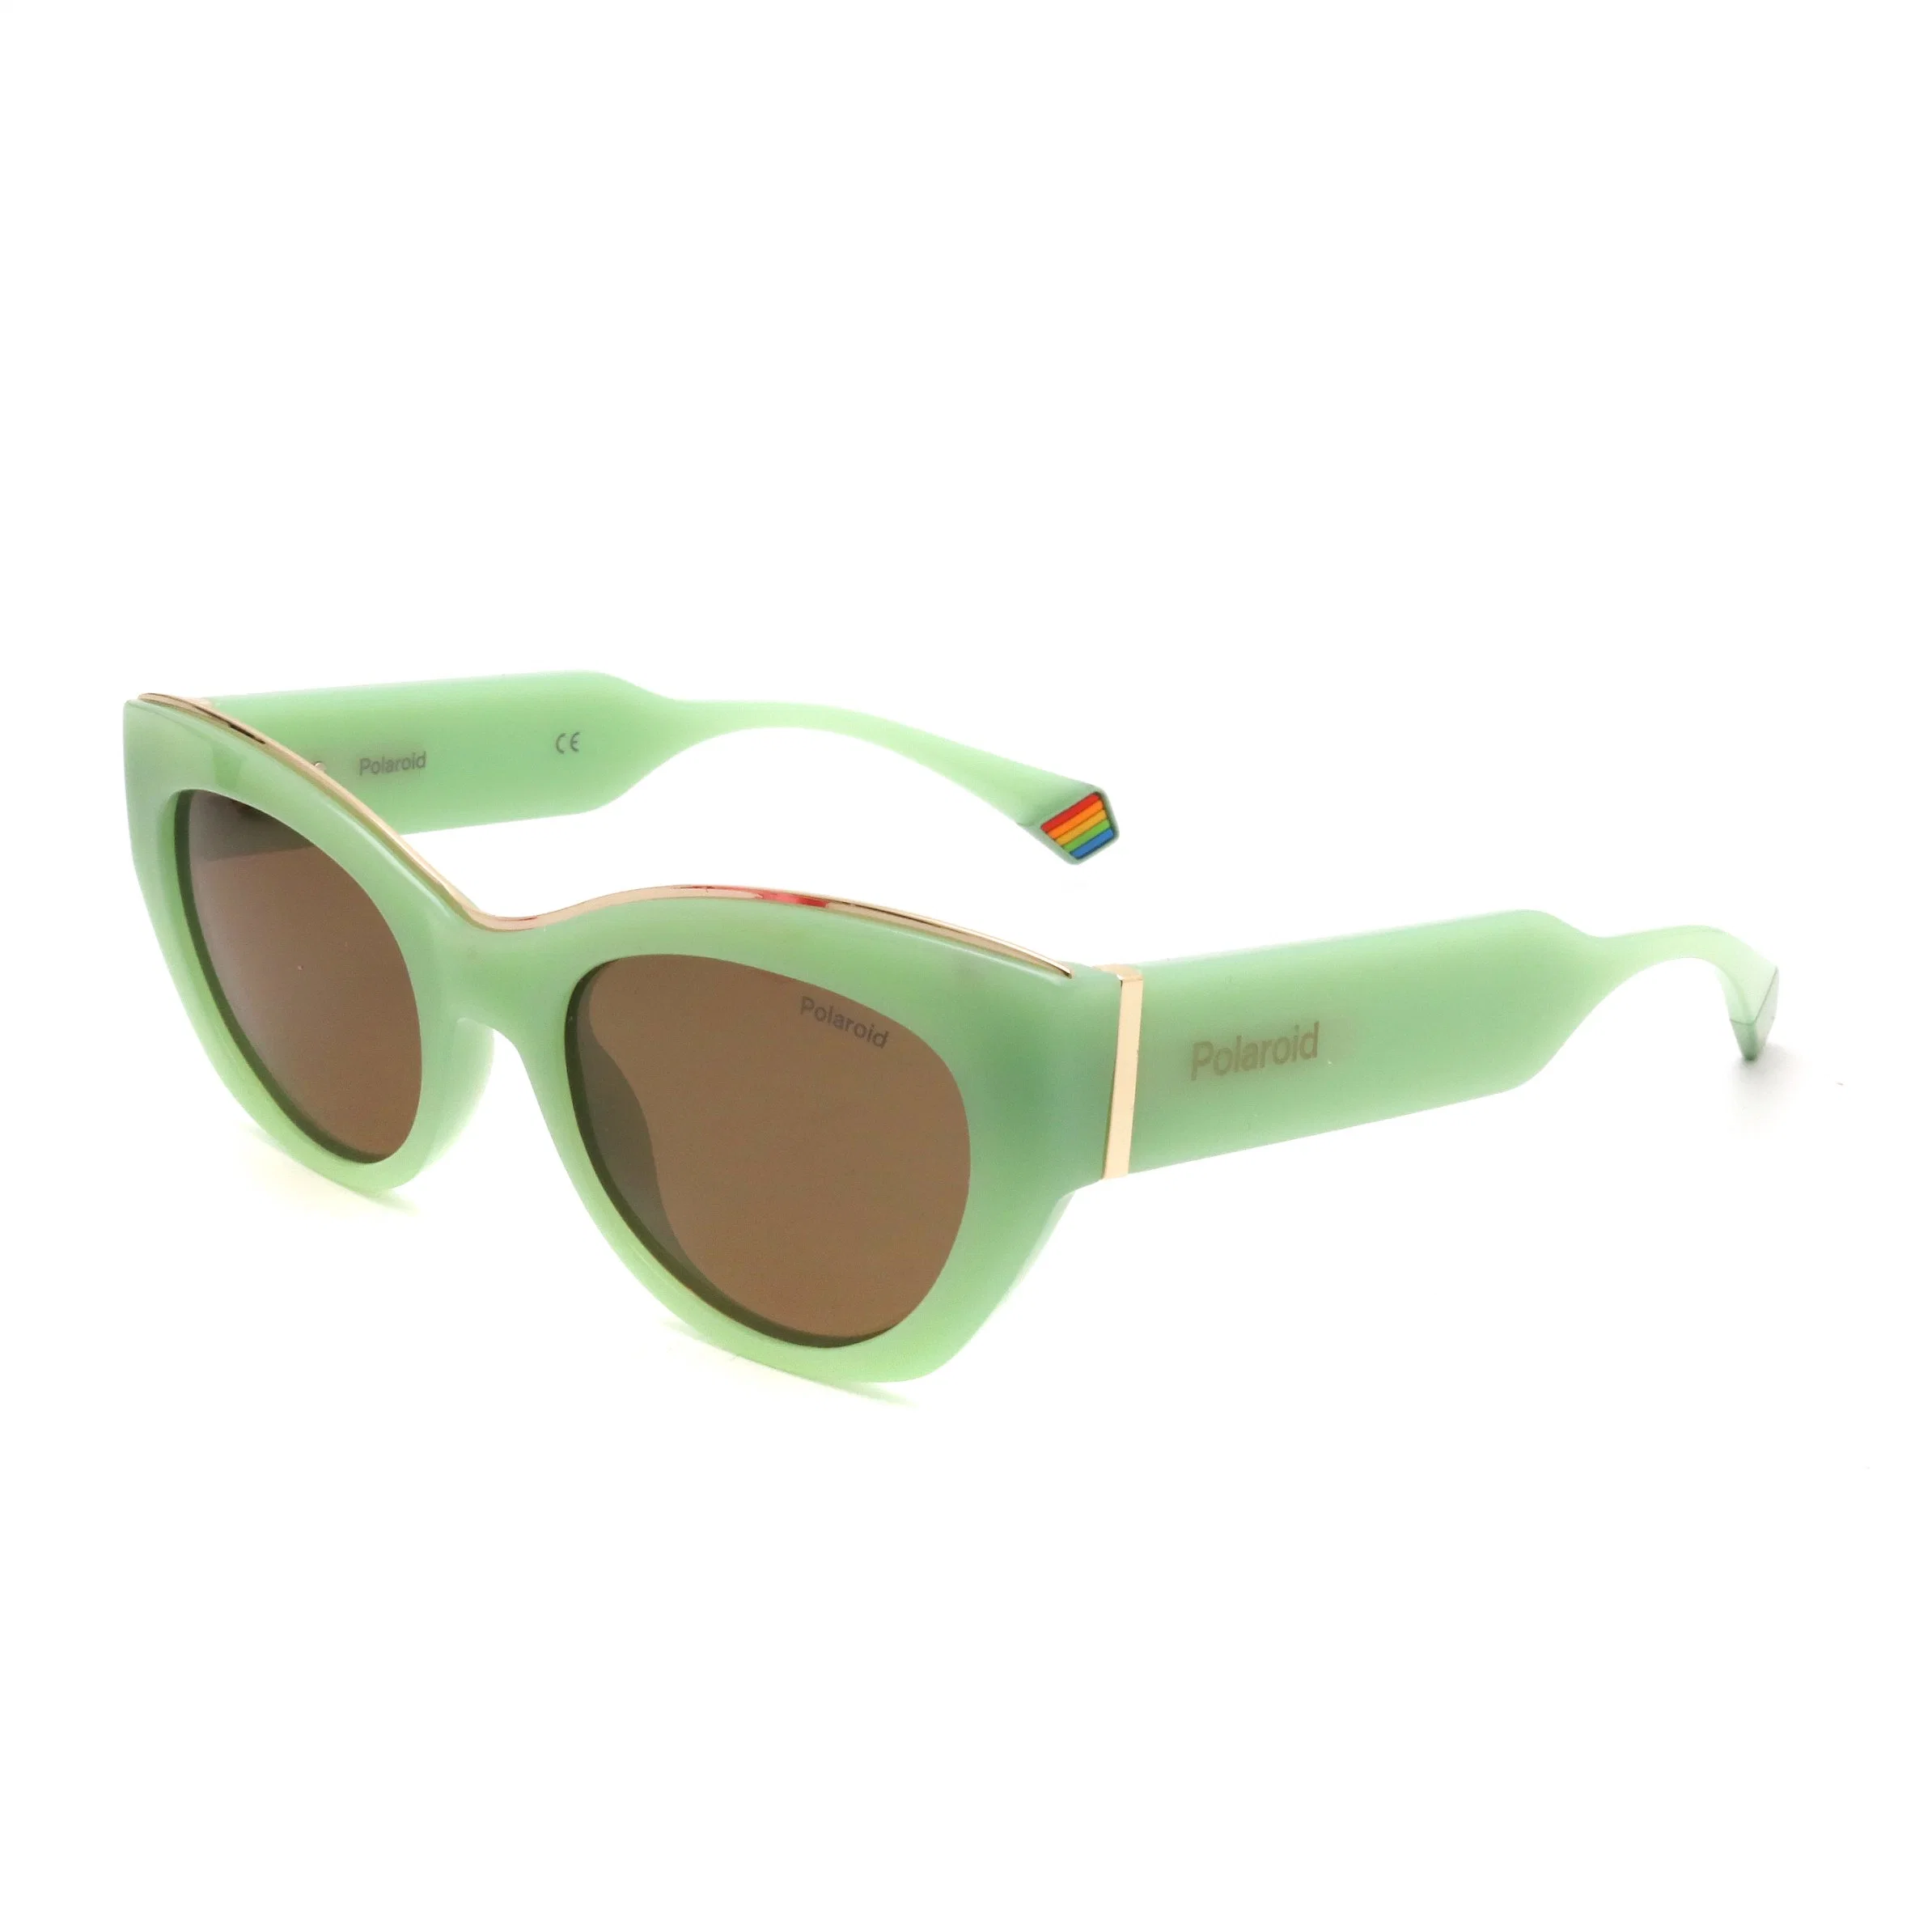 Plastic Wholesale/Supplier Oversized Fashionable Women Men Brand UV400 Black Sun Glases Colored Designer Sunglasses Sun Glasses Eyeglass